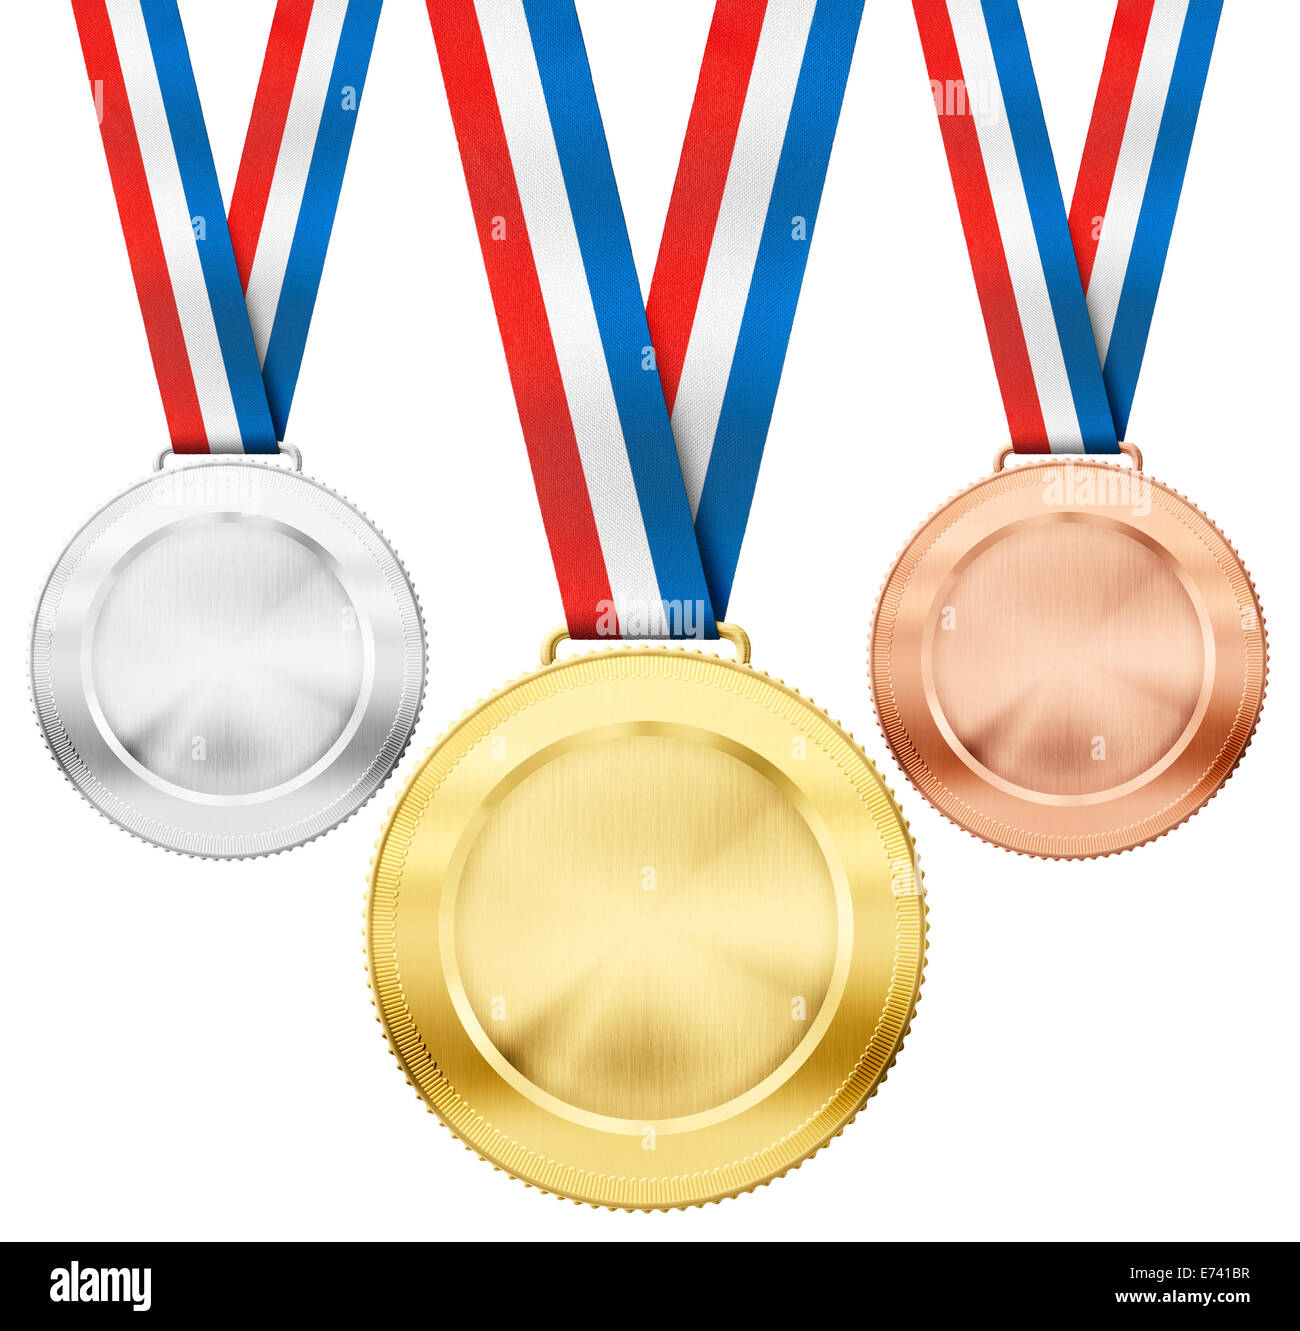 Rubans De Récompense D'or, D'argent Et De Bronze Clip Art Libres